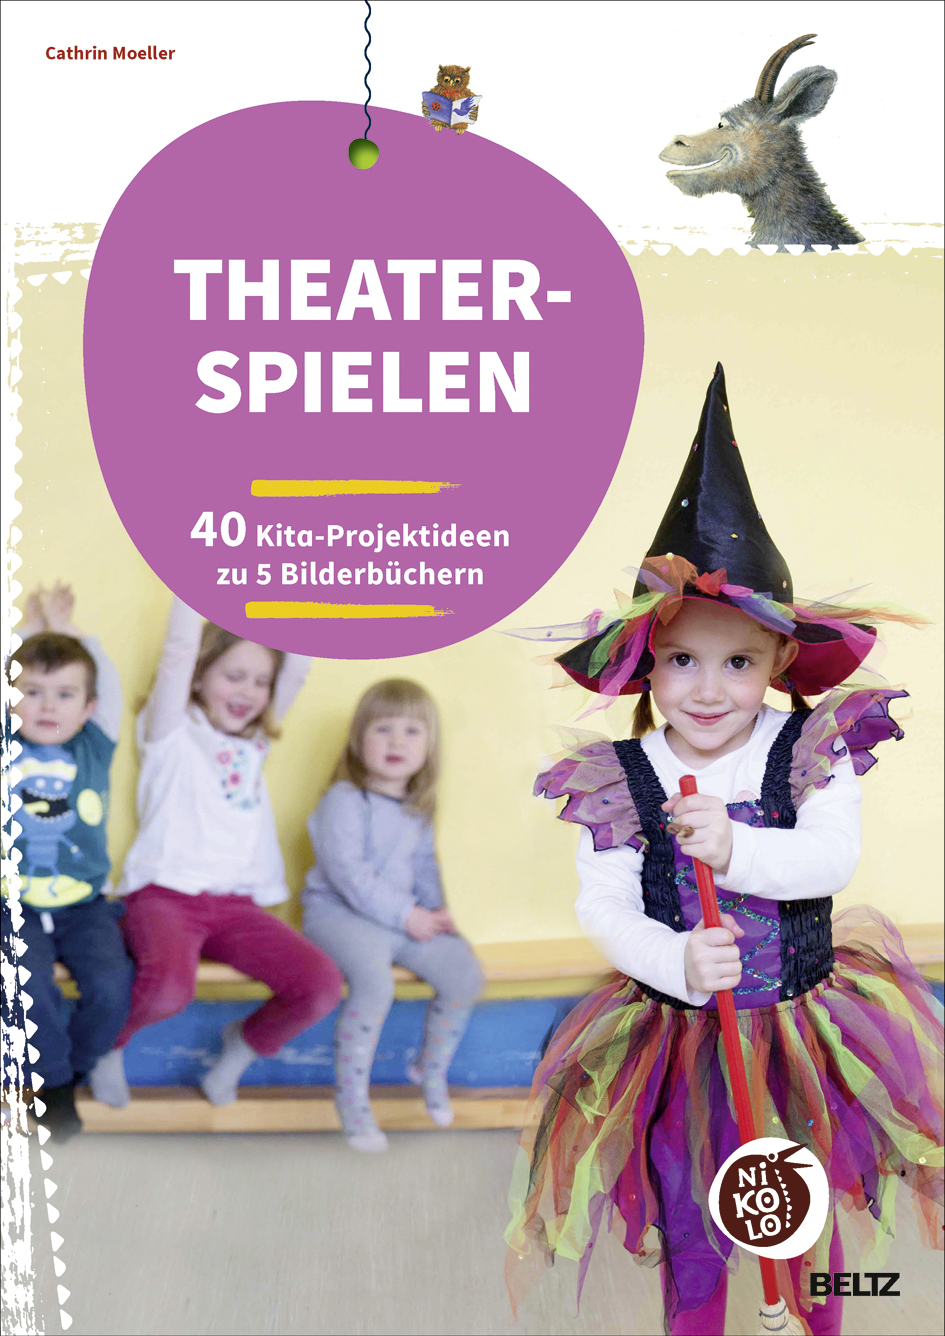 Cathrin MoellerTheater spielen zu Bilderbüchern. 40 Kita-Projektideen zu 5 Bilderbüchern